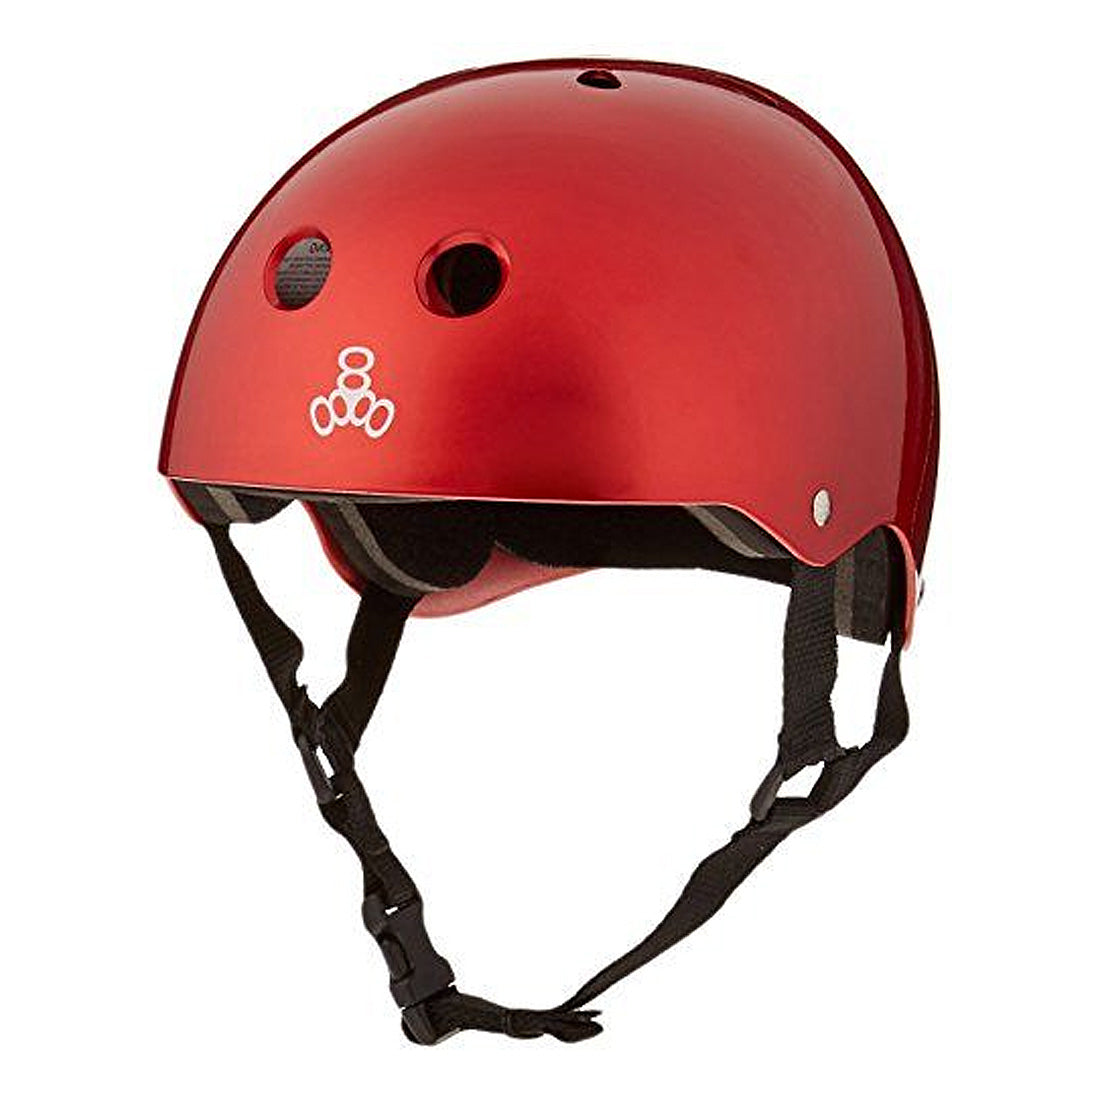 Triple 8 Skate SS Helmet - Red Metallic Gloss Helmets